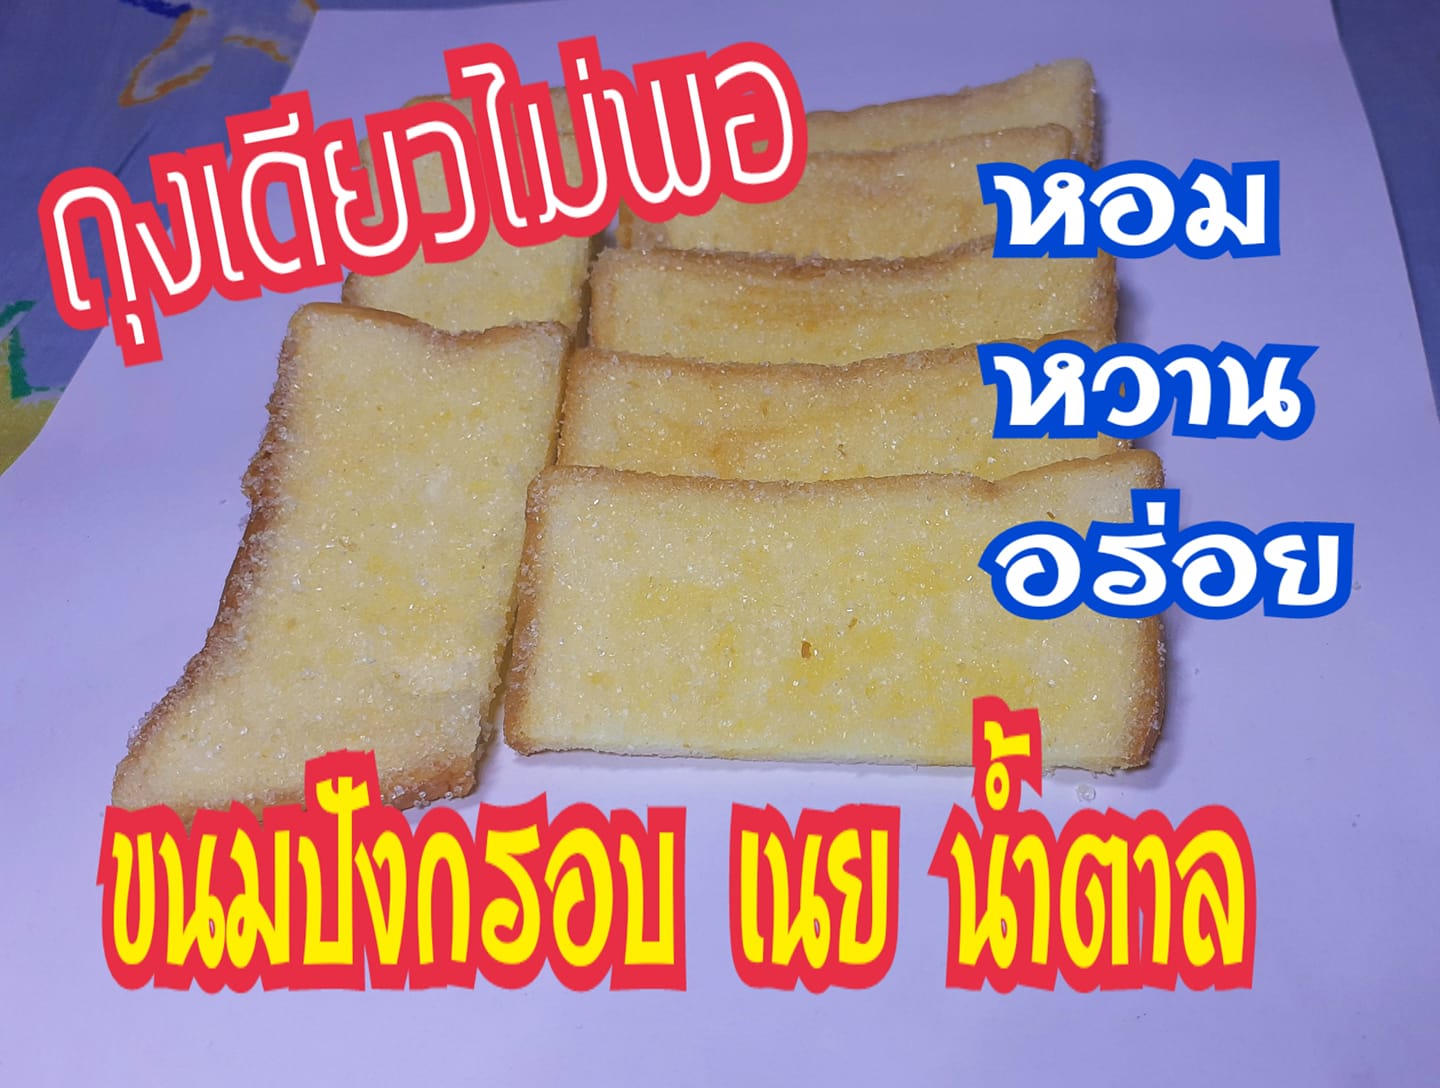 85-90 กรัม ขนมปังกรอบ เนย น้ำตาล ( ประมาณ 15 ชิ้น ) หวาน หอม กรอบ อร่อยมาก